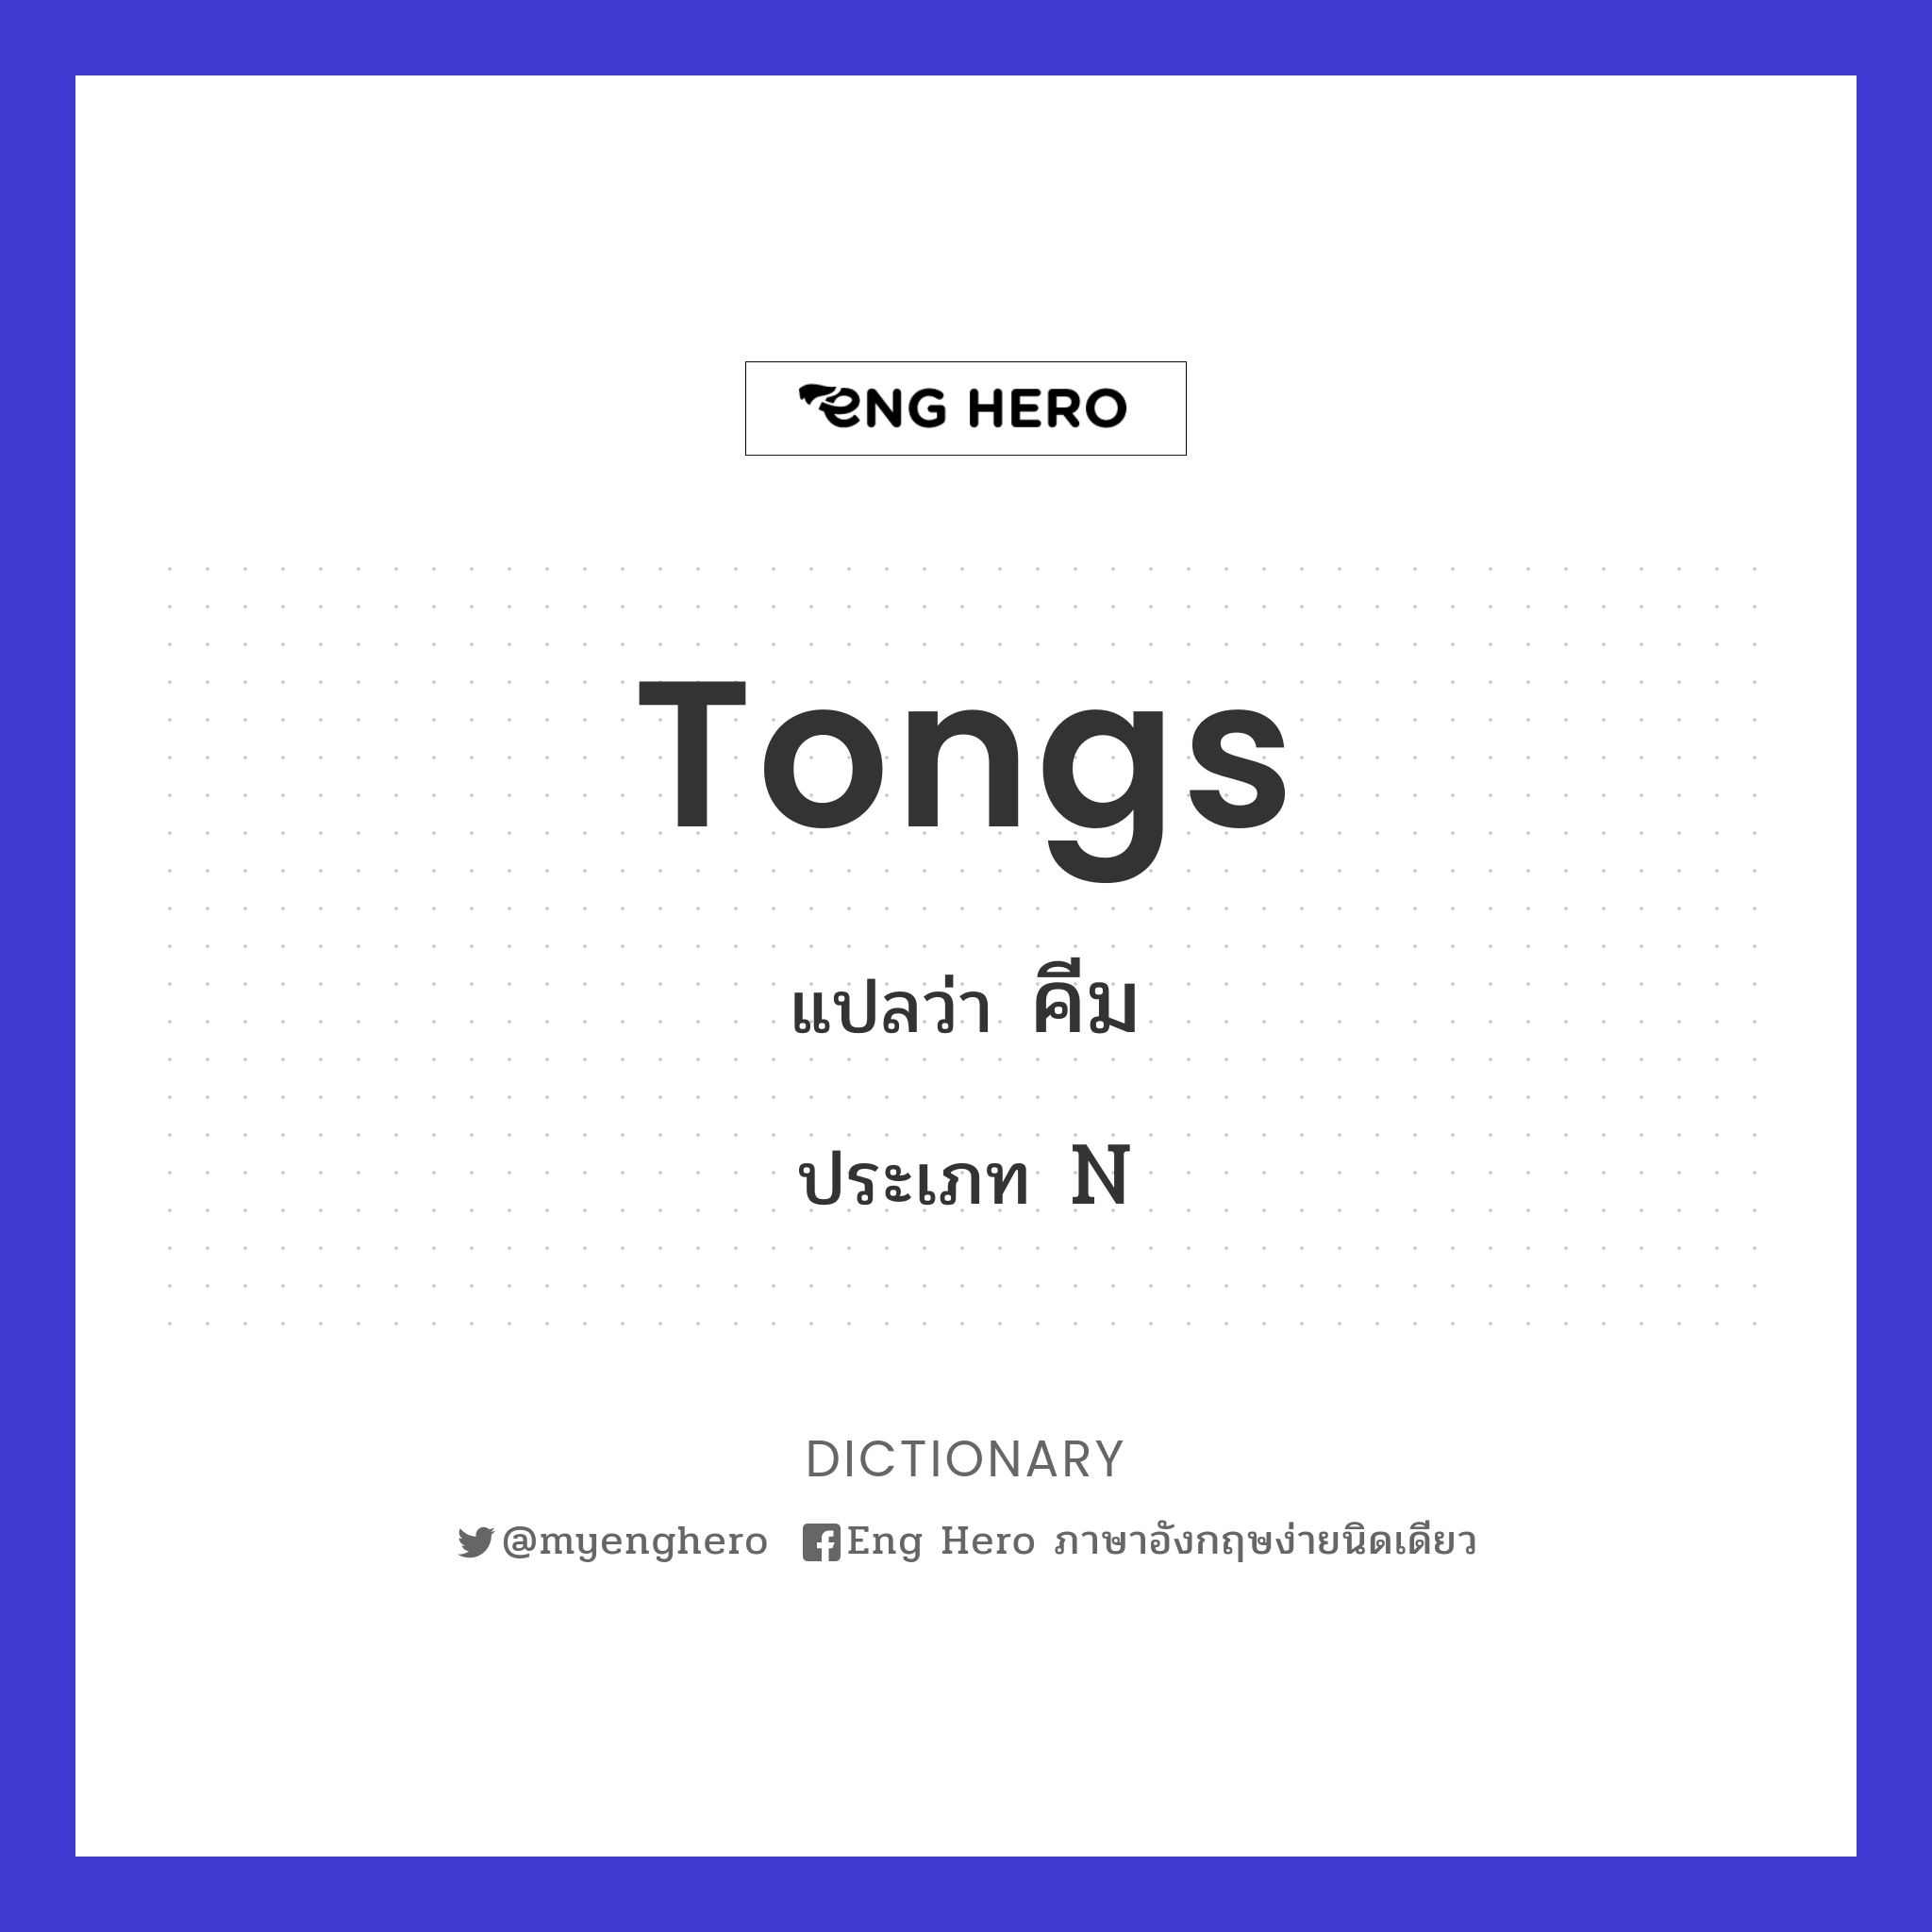 tongs